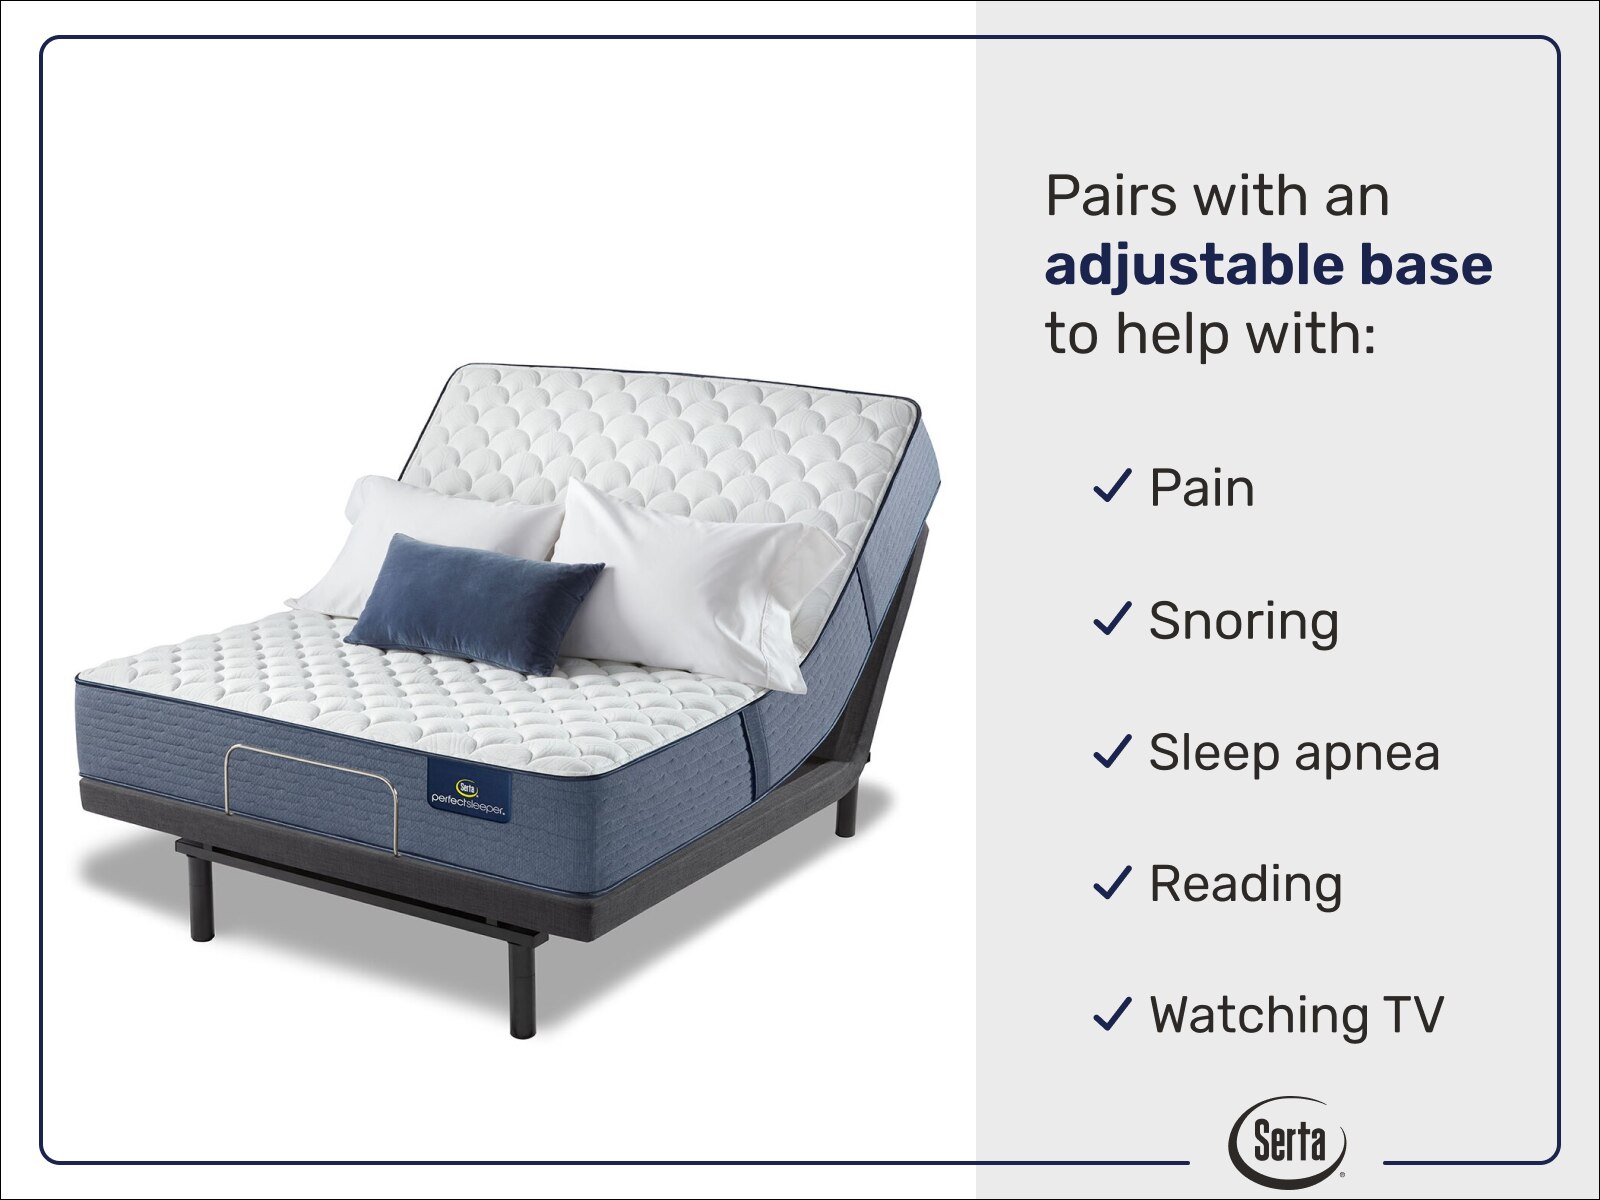 serta perfect sleeper cobalt coast 12 firm mattress